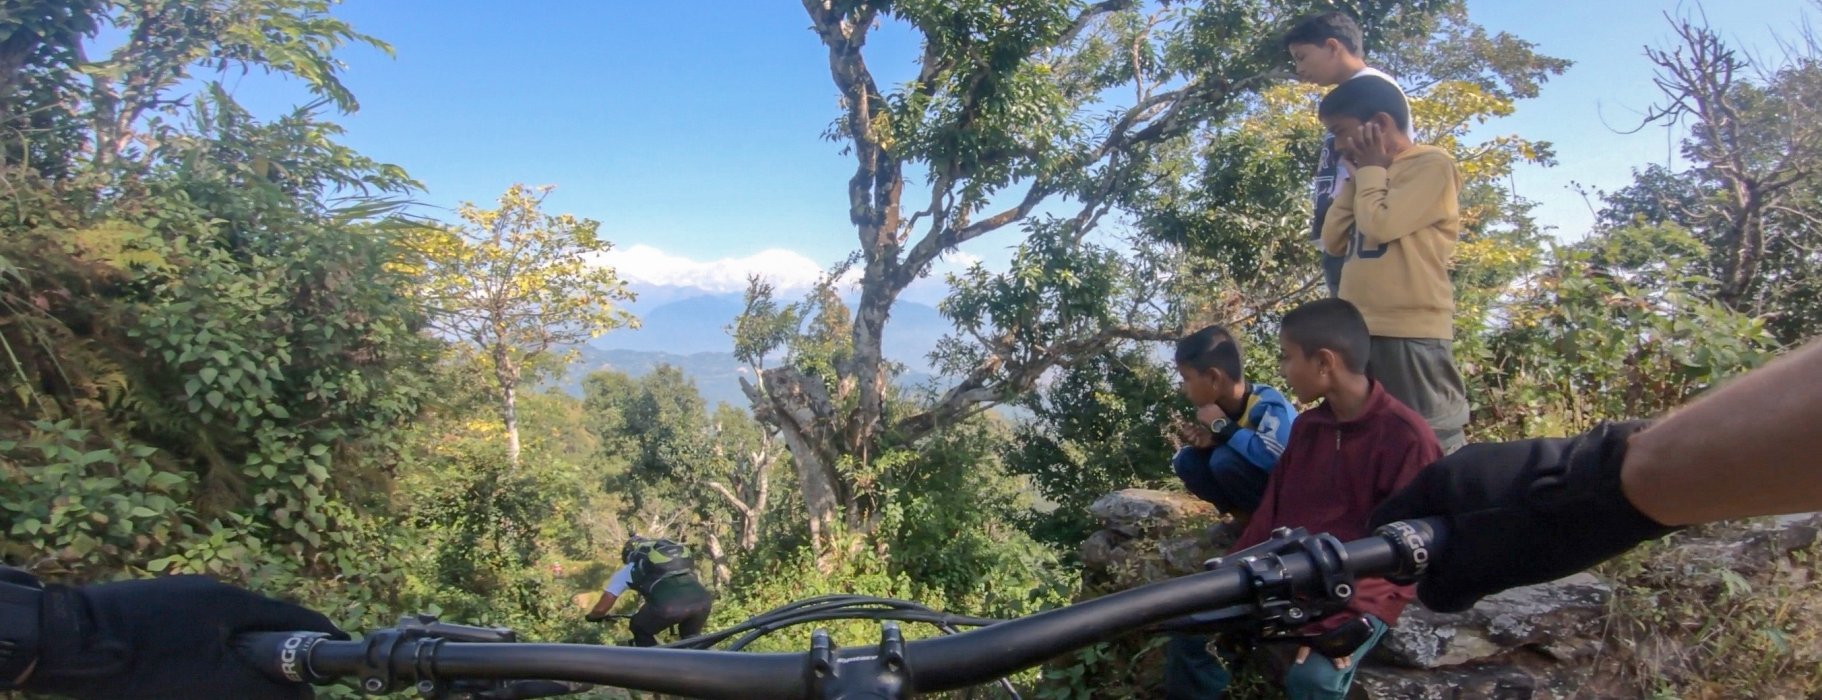 Lenker Bike Nepal Treppen Trail Dschungel 